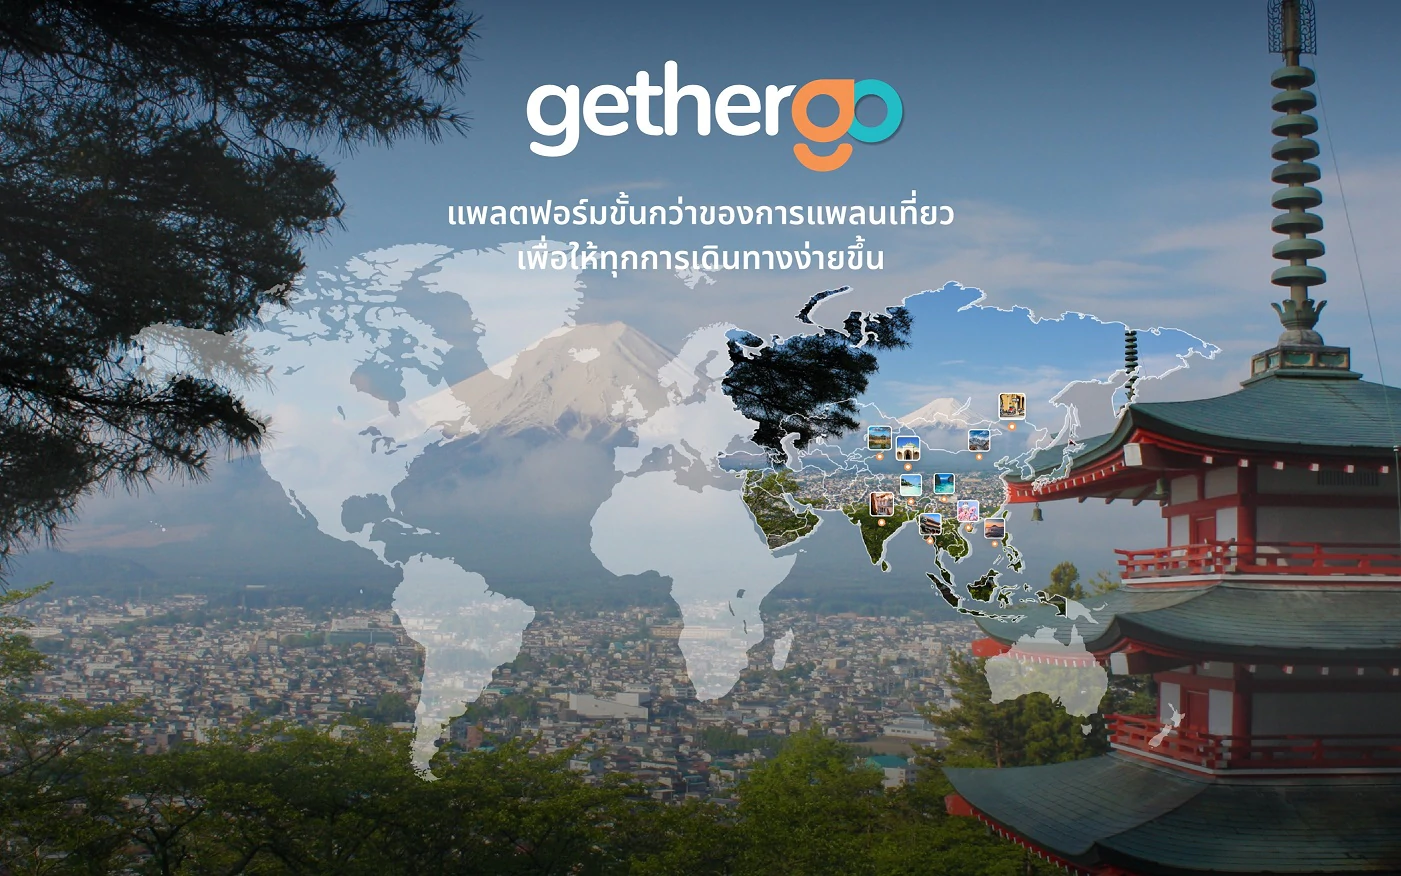 1 gethergo | gethergo | เปิดตัว gethergo แพลตฟอร์มสัญชาติไทย เพื่อขั้นกว่าของการแพลนเที่ยว